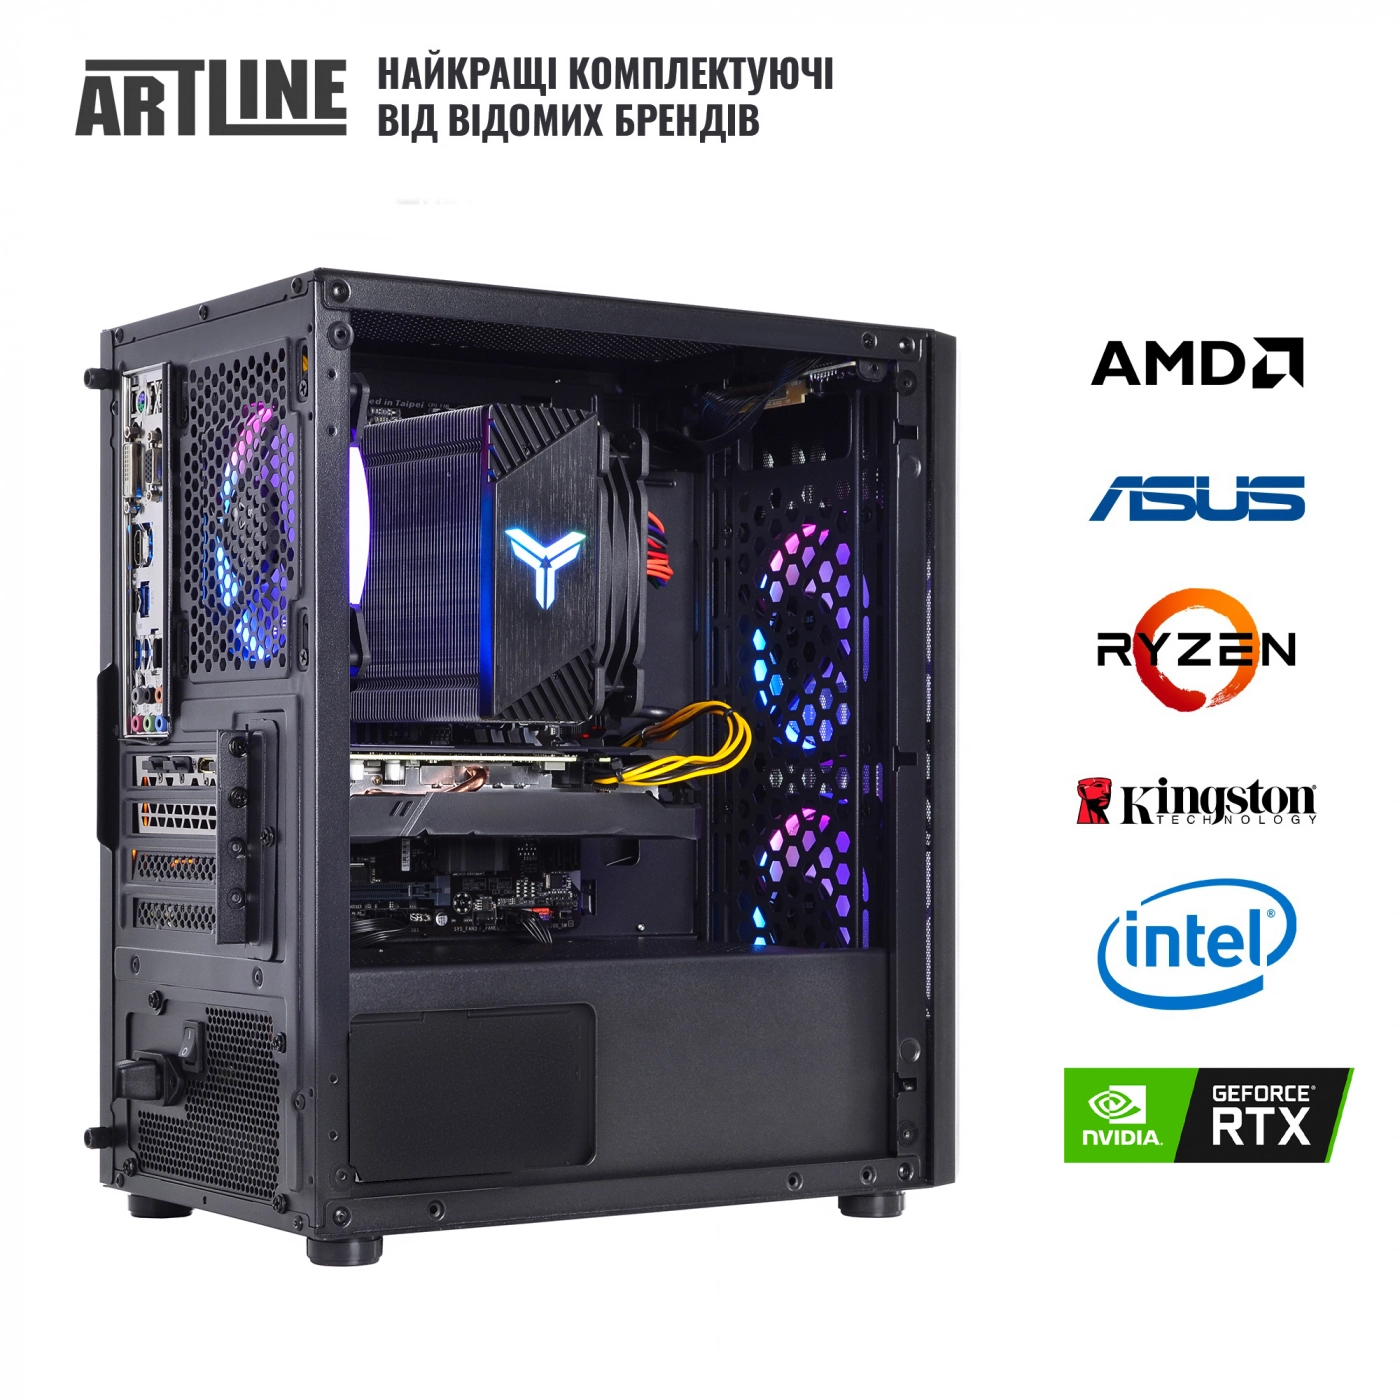 Купить Компьютер ARTLINE Gaming X37v40 - фото 6